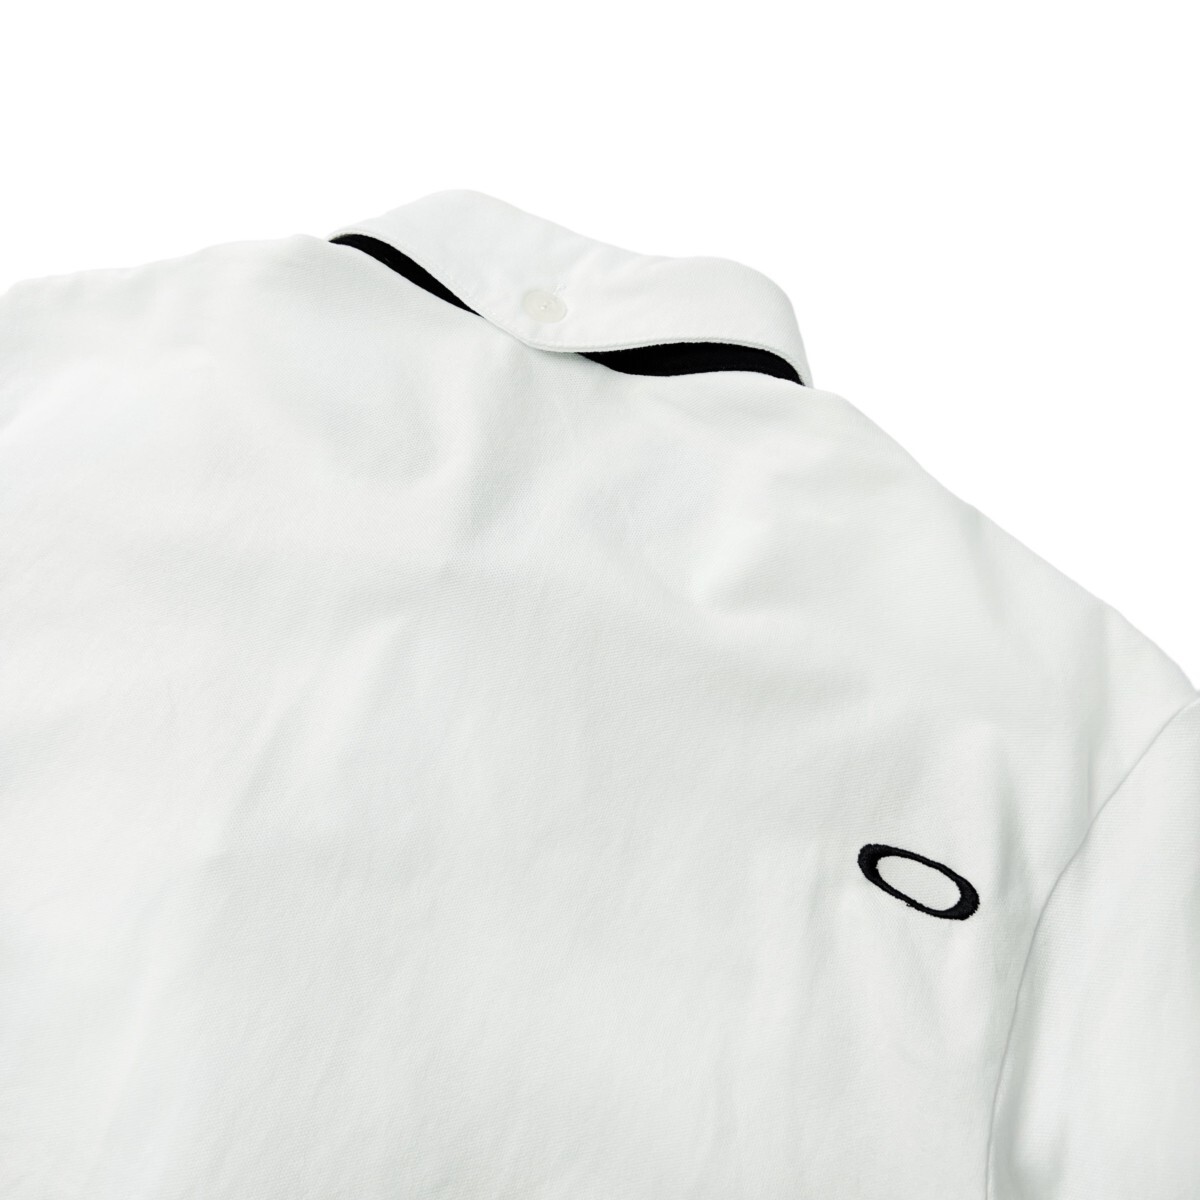 美品 OAKLEY GOLH オークリー ゴルフ / スカル 刺繍 半袖 ボタンダウン ポロシャツ / メンズ L サイズ / 白 ホワイト 人気 ゴルフウェアの画像7